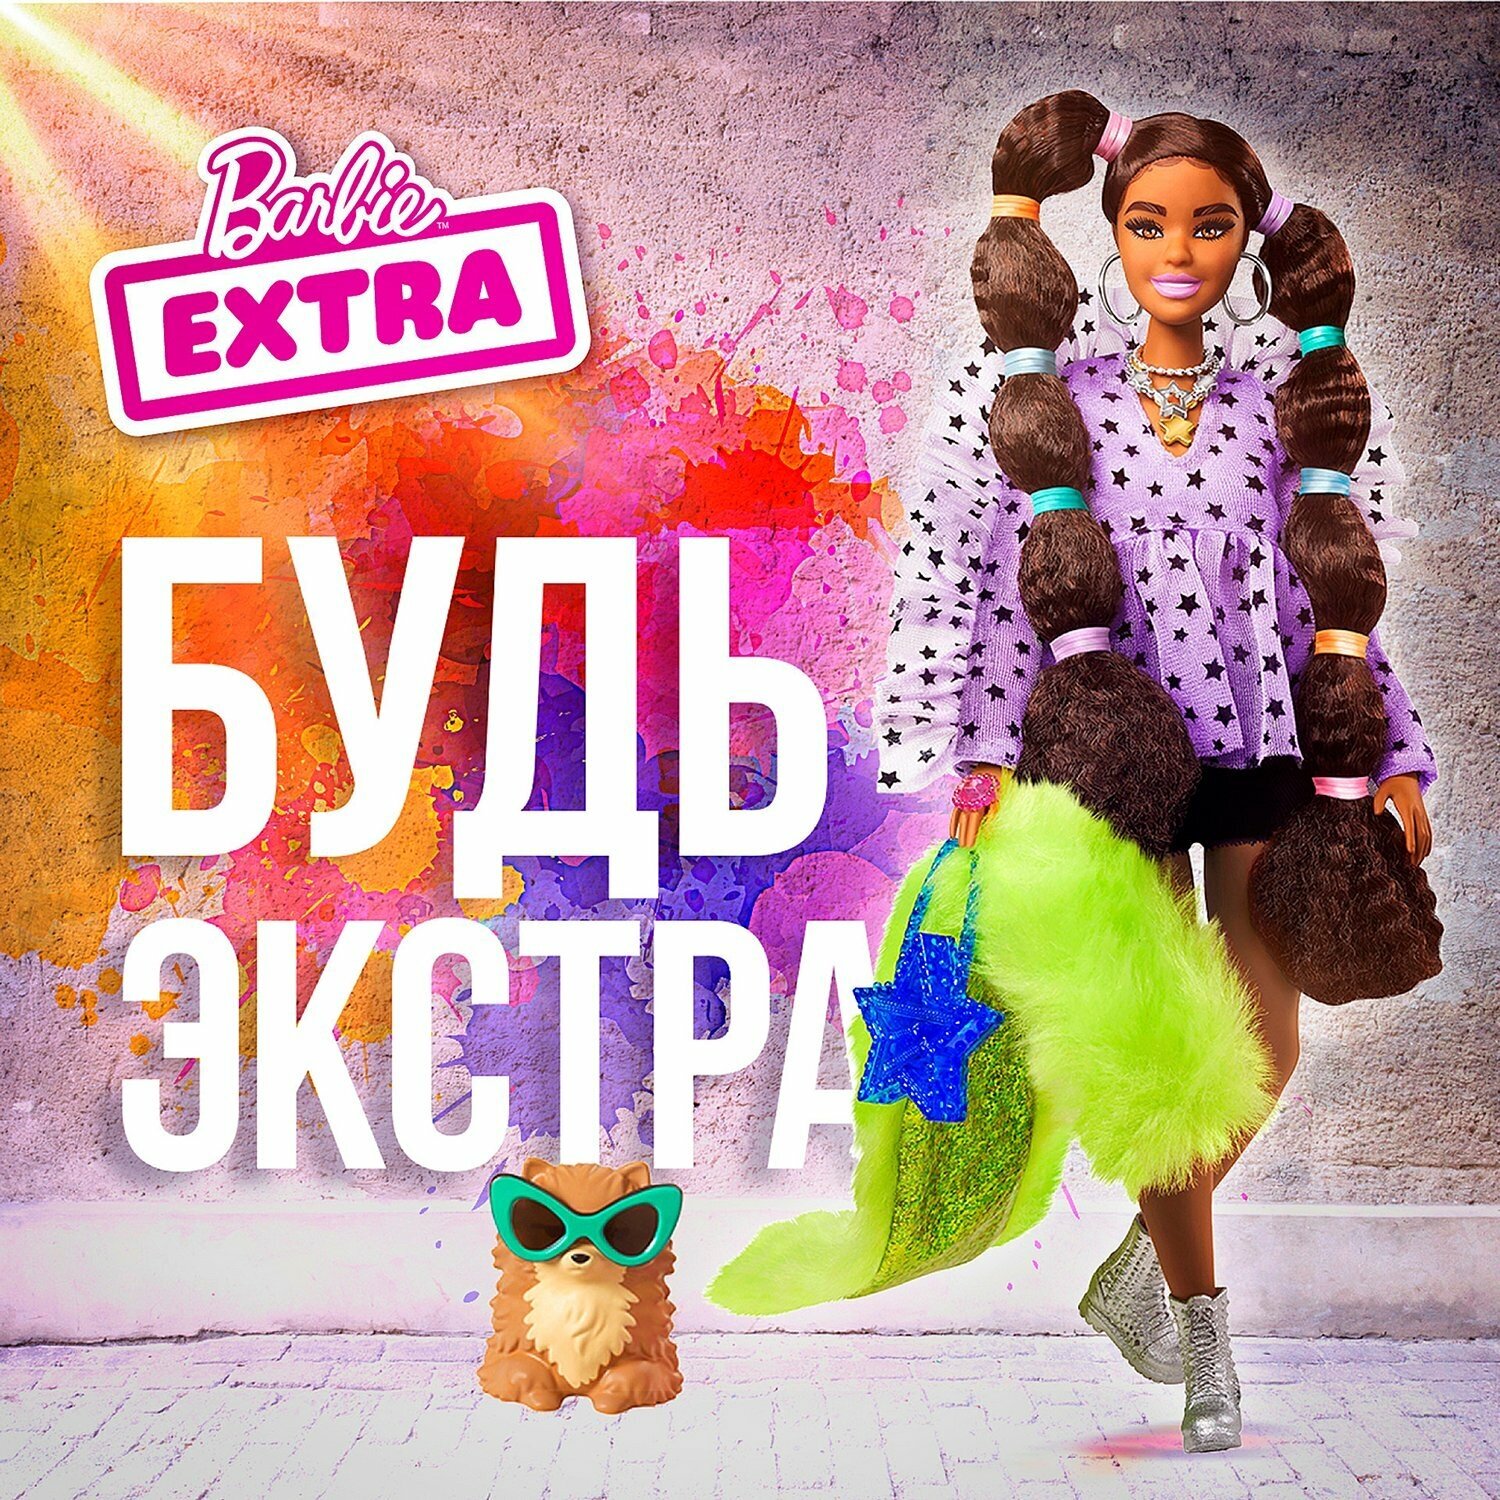 Barbie Кукла Экстра с переплетенными резинками хвостиками - фото №10